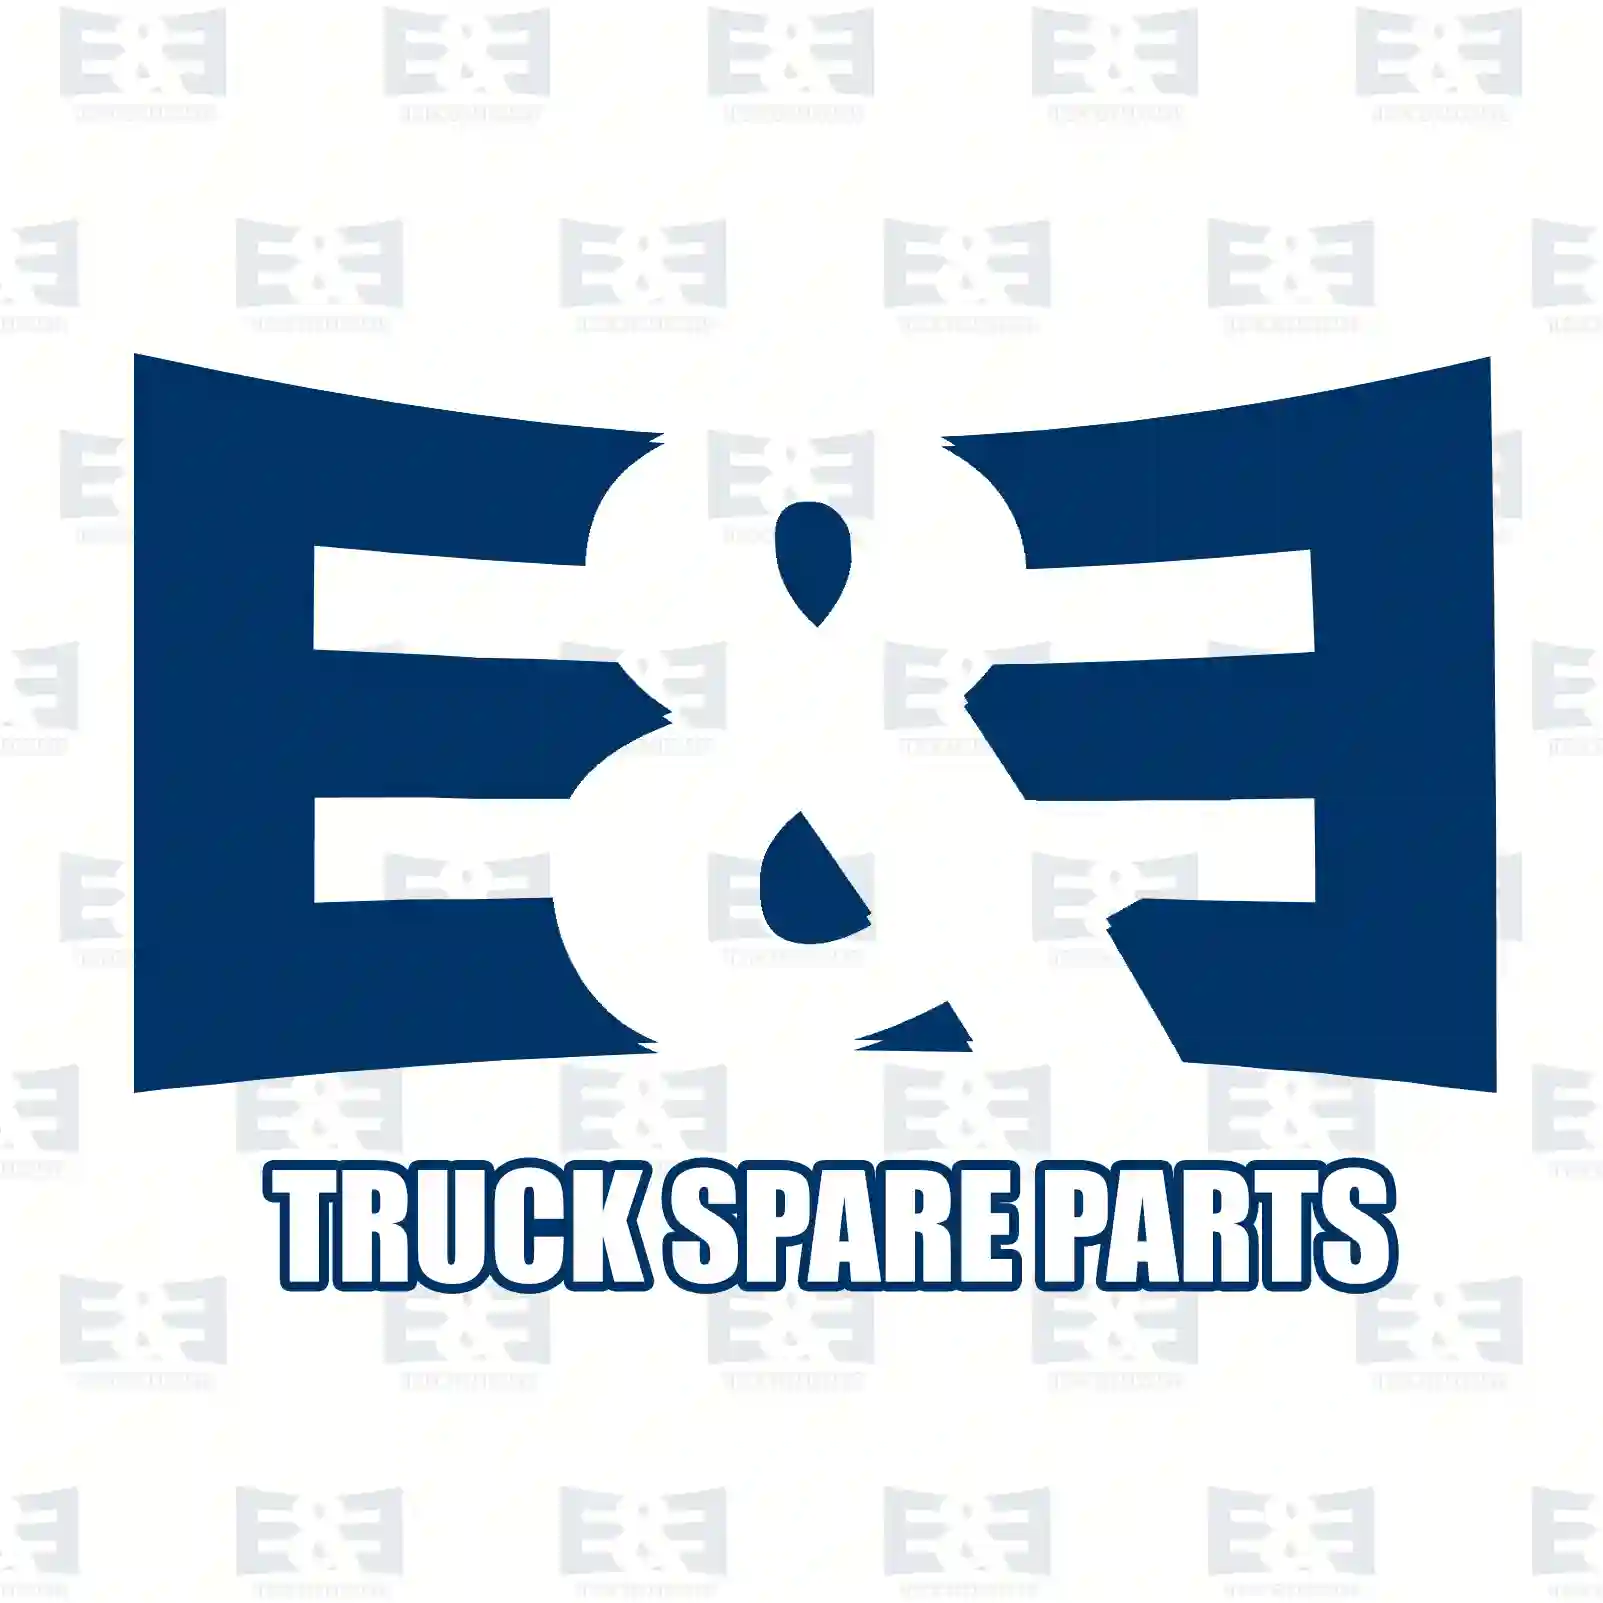 Wheel hub, 2E2284061, 330765, 1300472080, 330765 ||  2E2284061 E&E Truck Spare Parts | Truck Spare Parts, Auotomotive Spare Parts Wheel hub, 2E2284061, 330765, 1300472080, 330765 ||  2E2284061 E&E Truck Spare Parts | Truck Spare Parts, Auotomotive Spare Parts